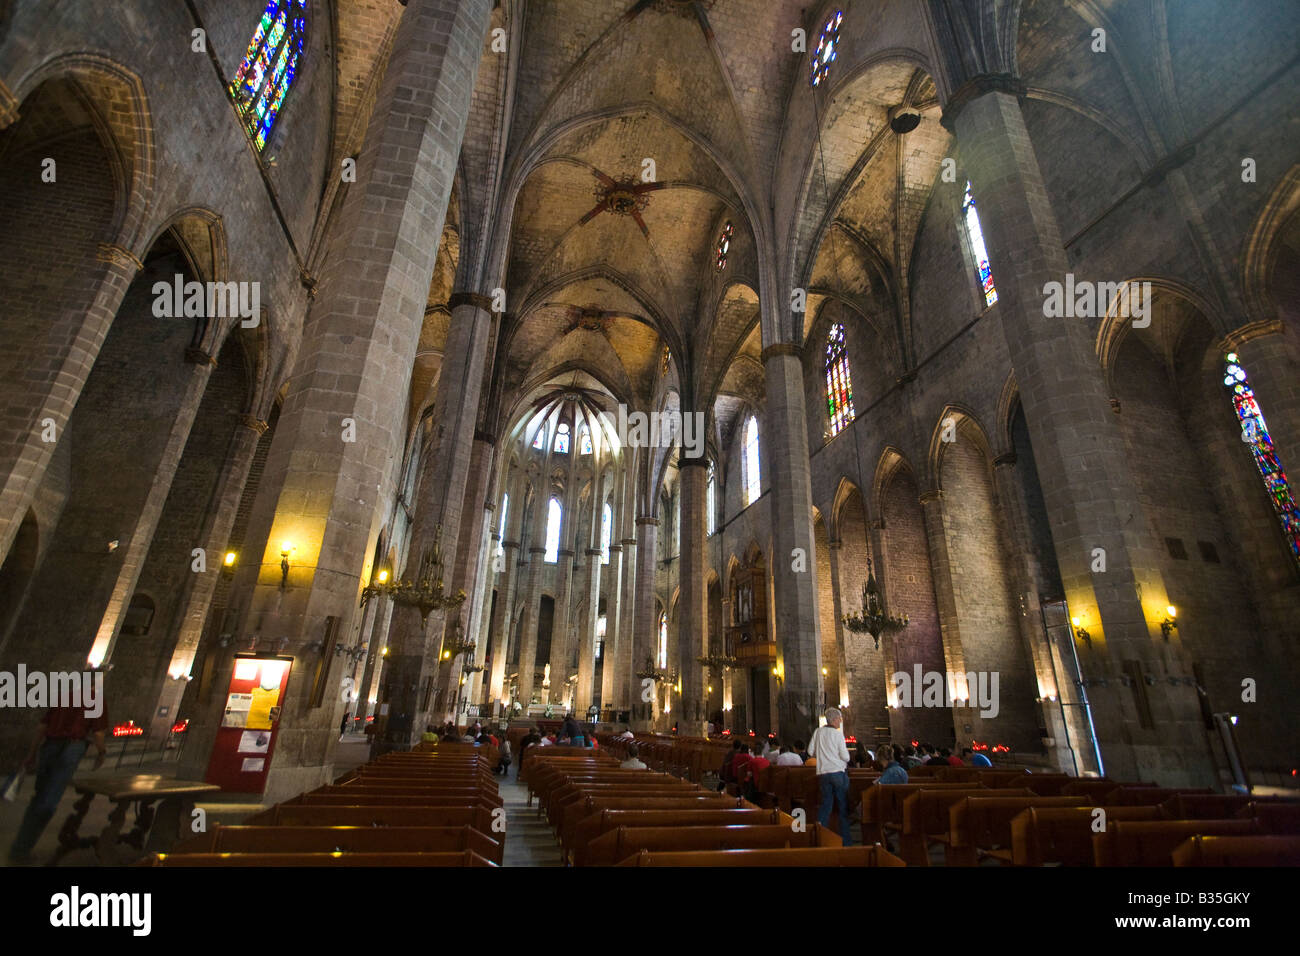 Espagne Barcelone Visiteurs de style gothique catalan architecture d'intérieur de l'église de Santa Maria del Mar dans le quartier de La Ribera Banque D'Images